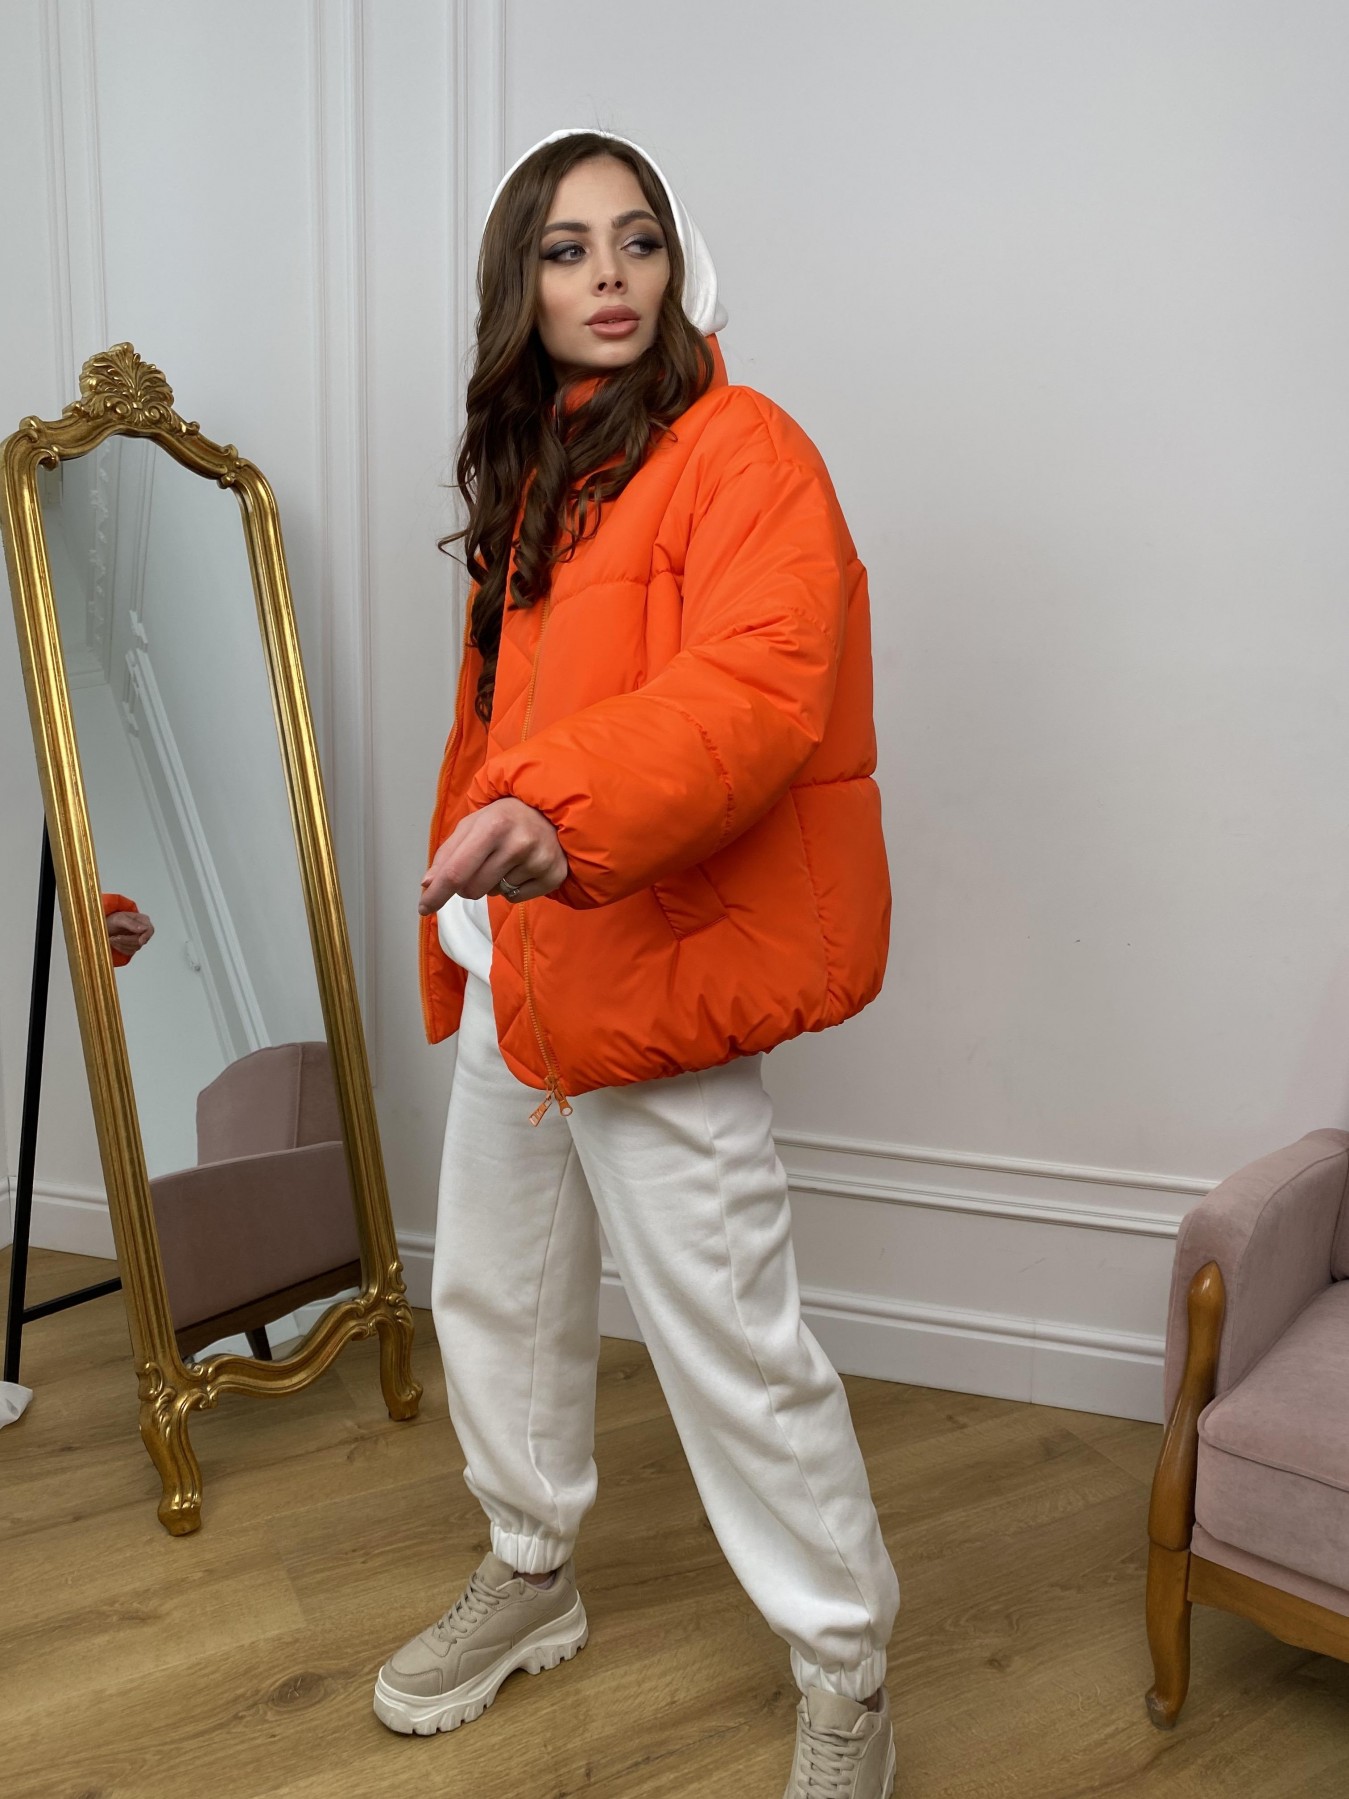 Муд куртка из плащевой ткани 10509 АРТ. 46915 Цвет: Оранжевый 788 - фото 4, интернет магазин tm-modus.ru